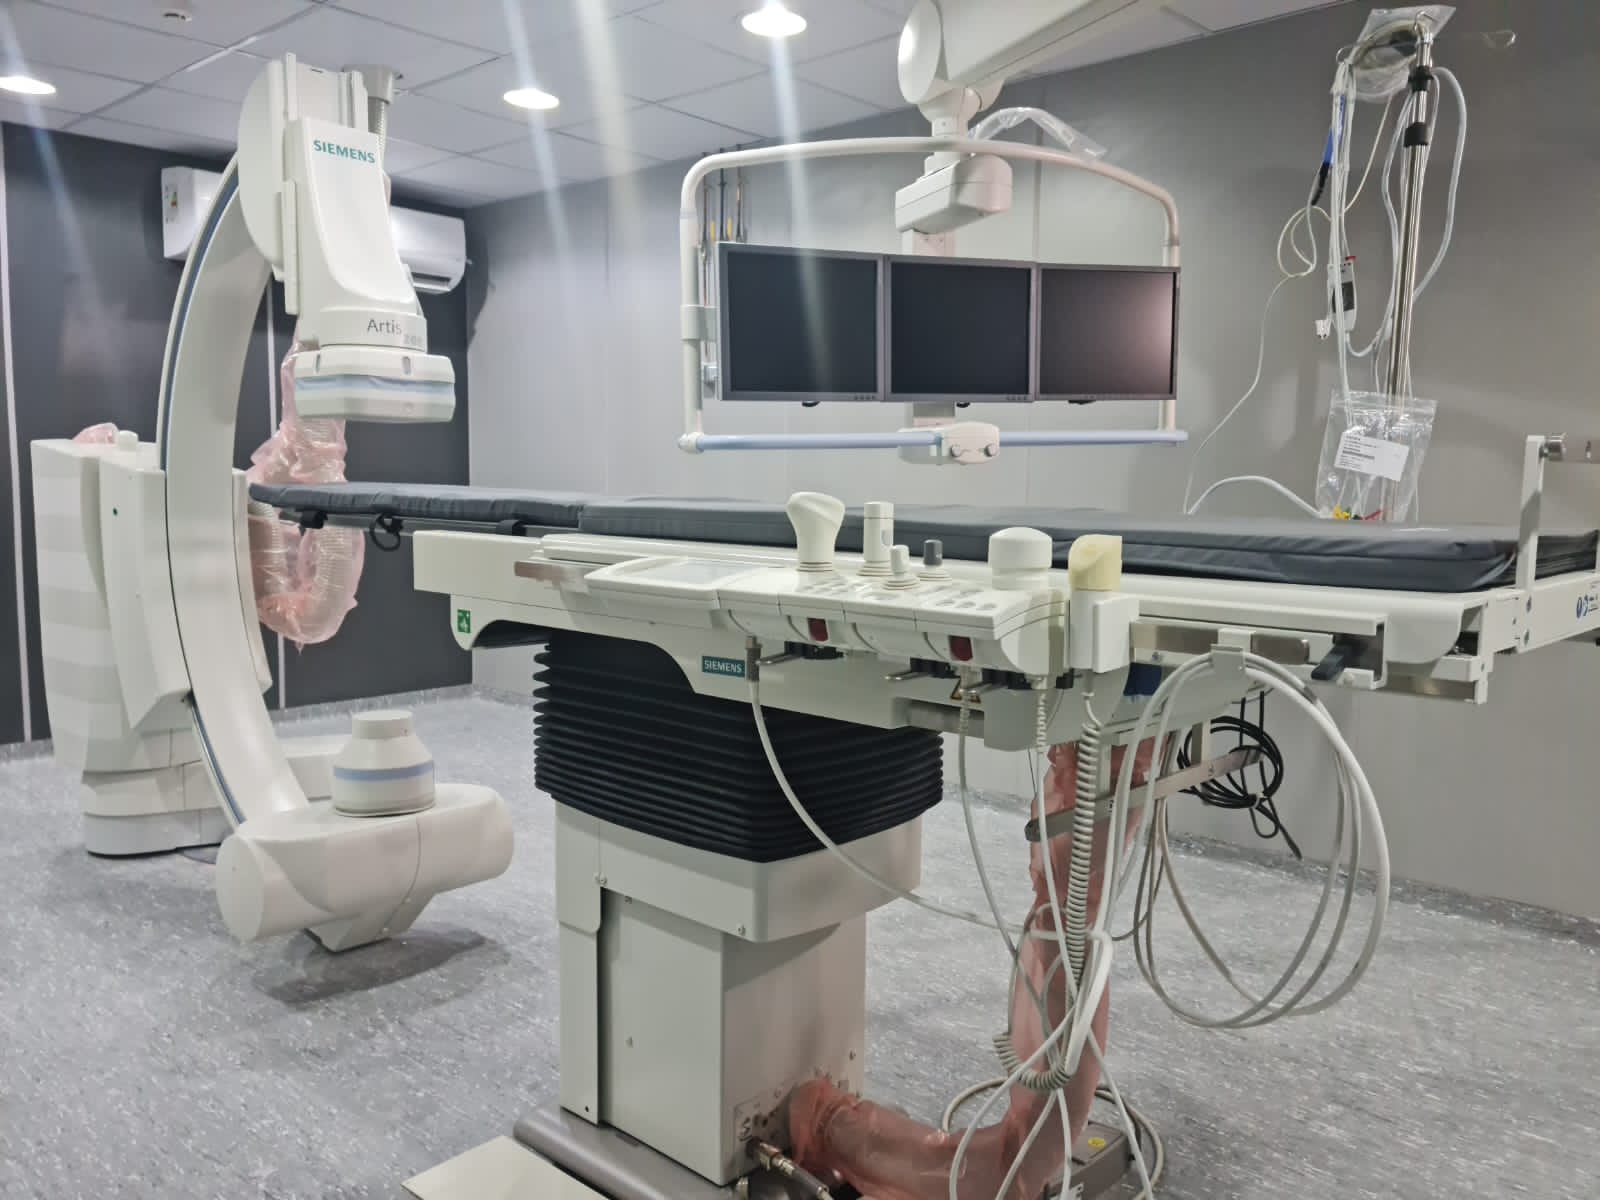 افتتاح وحدة القسطرة القلبية بمستشفى الصفوة بالعامرية  (4)